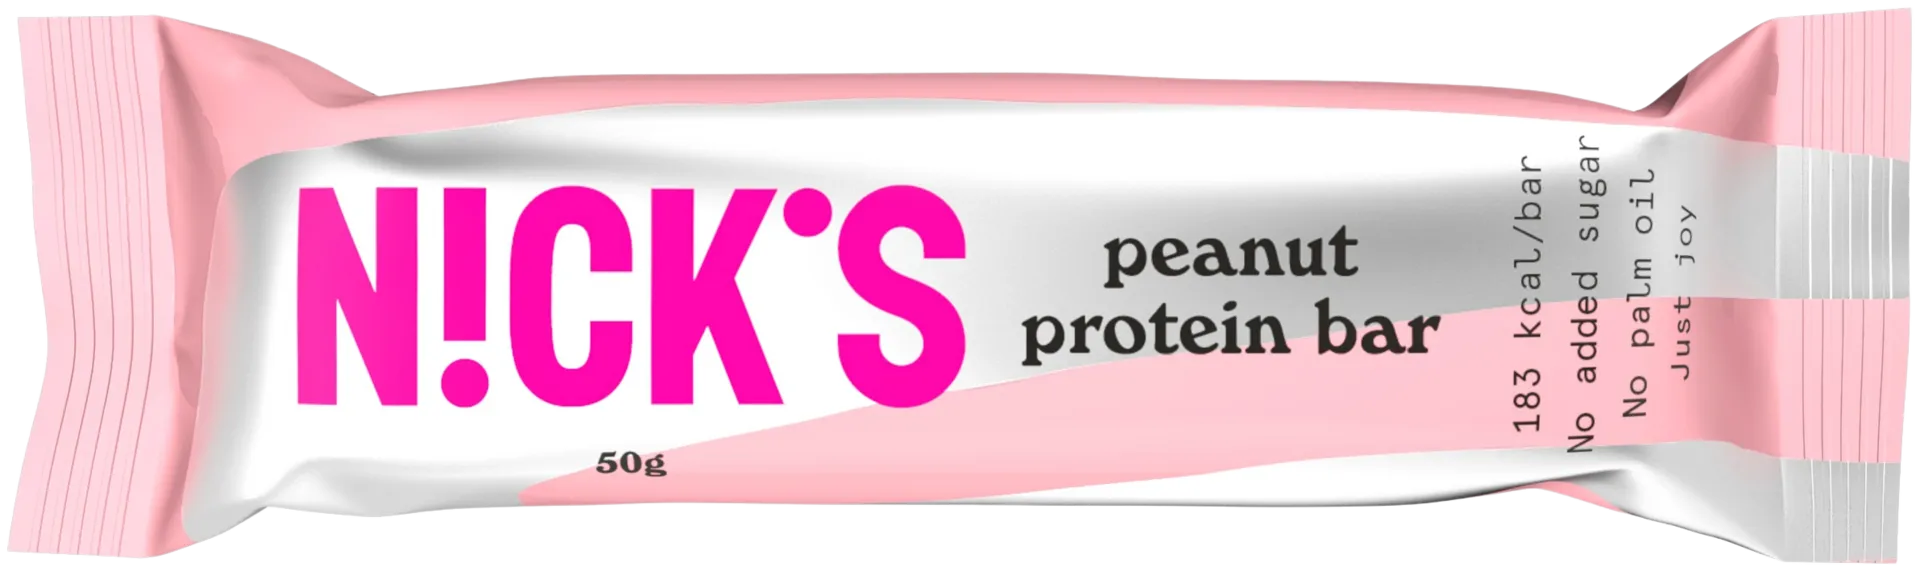 Nick's peanut proteiinipatukka 50g